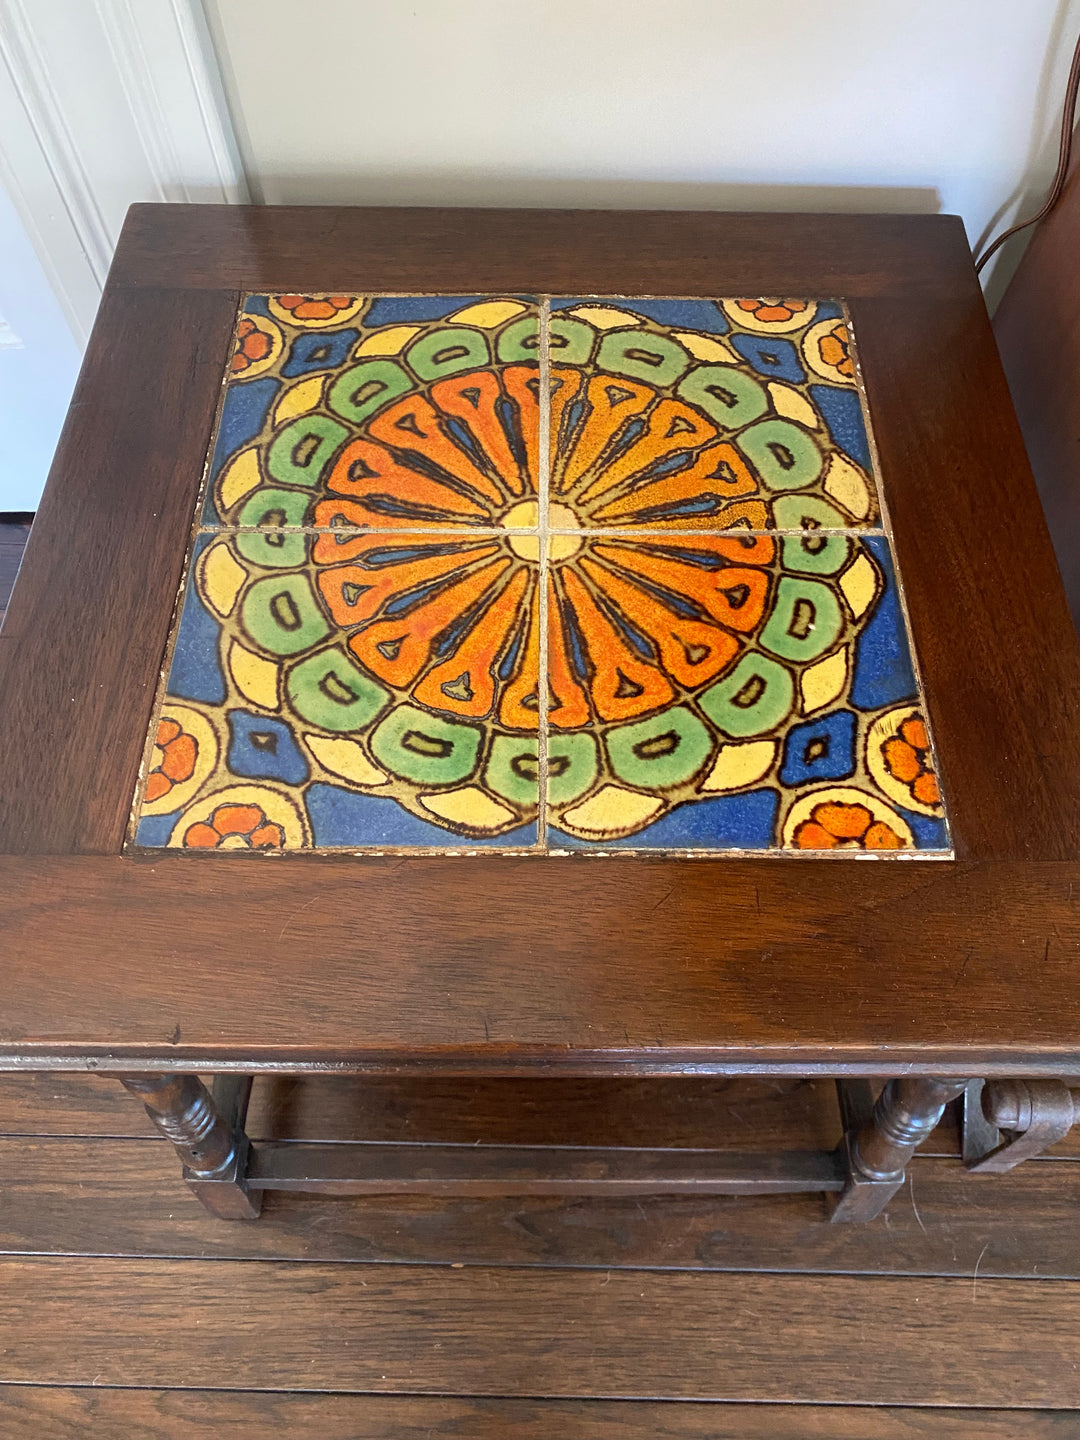 Malibu Tile Table, original Wooden Base